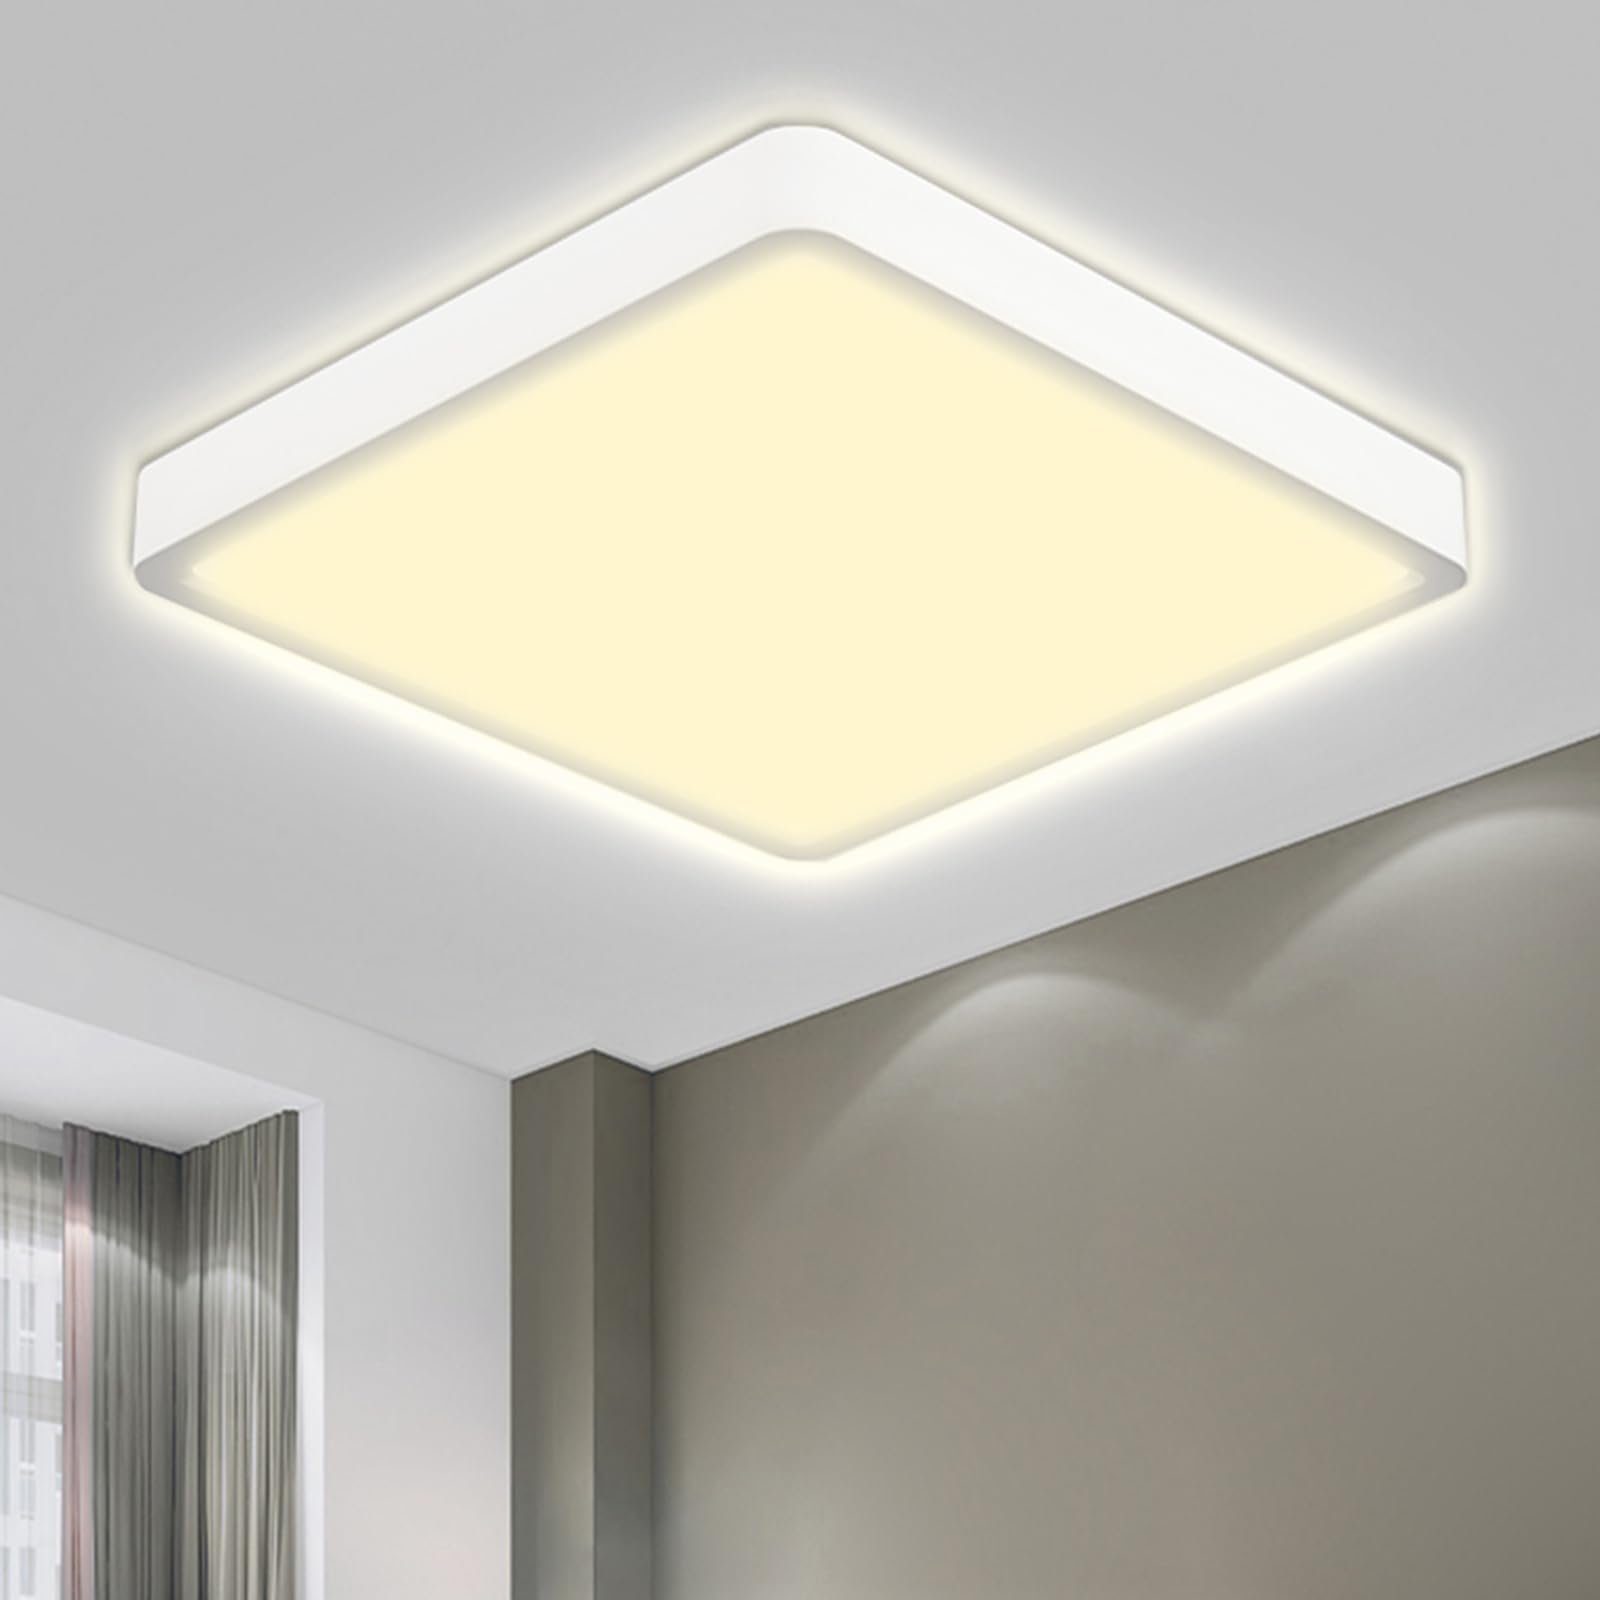 LQWELL LED Deckenleuchte Quadrat Flach LED Deckenlampe, 18W,1600LM, LED fest integriert, Tageslichtweiß, Modern Schlicht Lampe Dünn, IP44 Wasserfest Badlampe